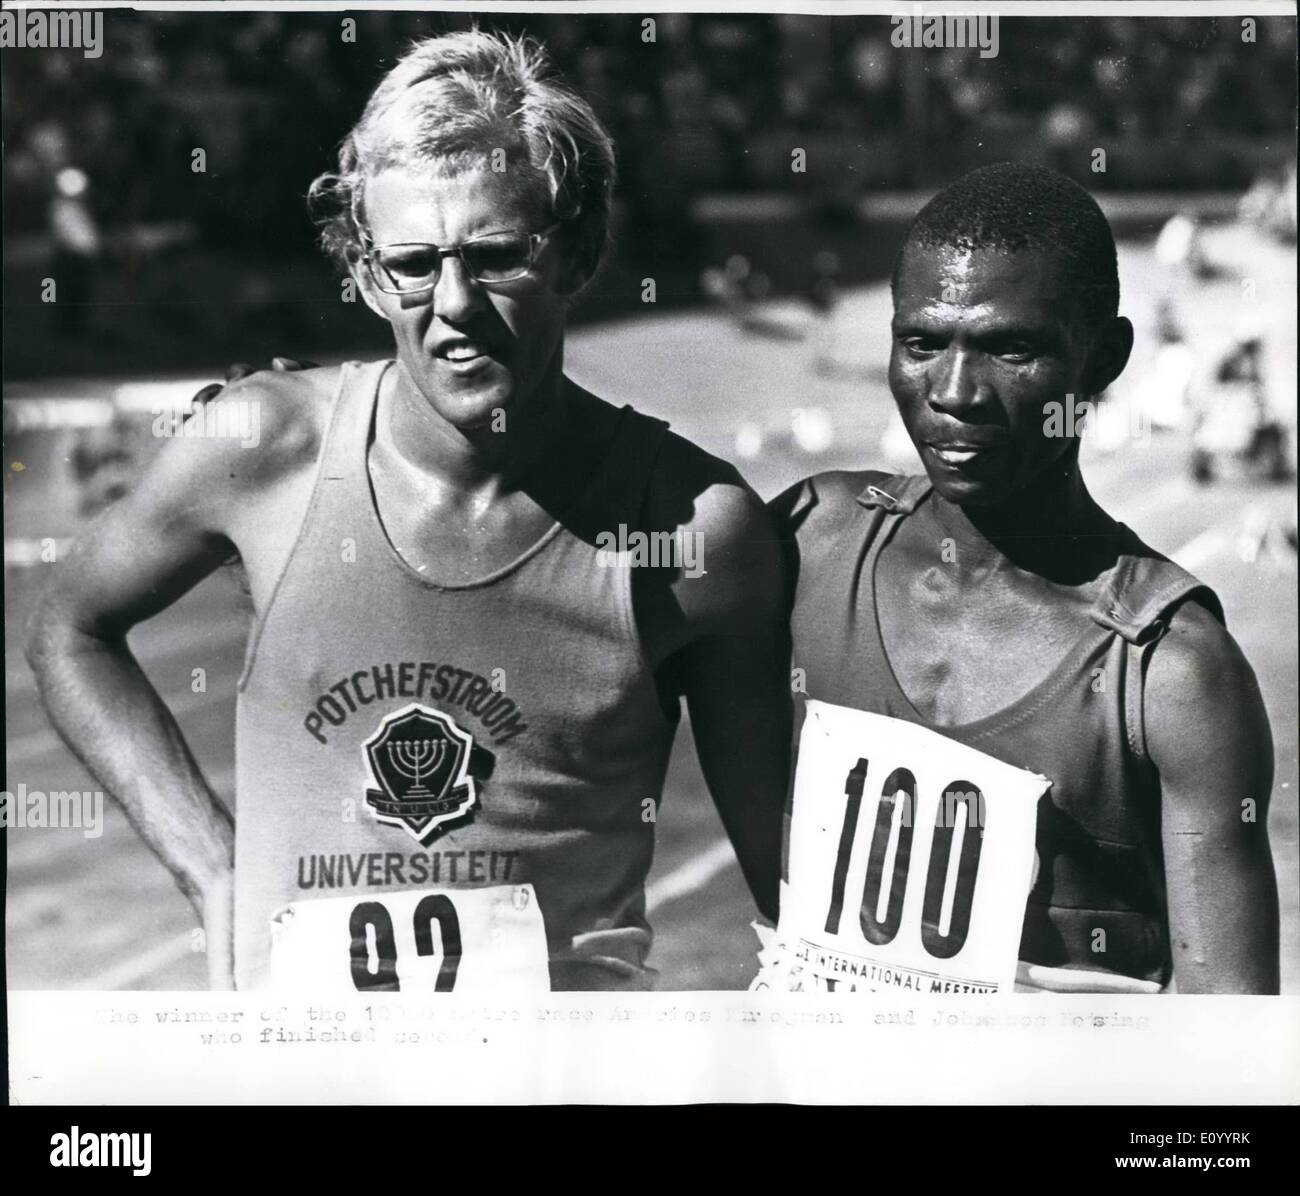 Le 12 décembre 1971 - Les athlètes noirs et blancs en Afrique du Sud, première réunion d'athlétisme multinationale. En photo ensemble après la course de 10 000 mètres, qui s'est tenue récemment à Cape Town Afrique du Sud au cours de la première réunion nationale d'athlétisme. sont Andries Krogman (à gauche), le gagnant, et Johannes Metsing qui était deuxième - à la fois d'Afrique du Sud. Banque D'Images